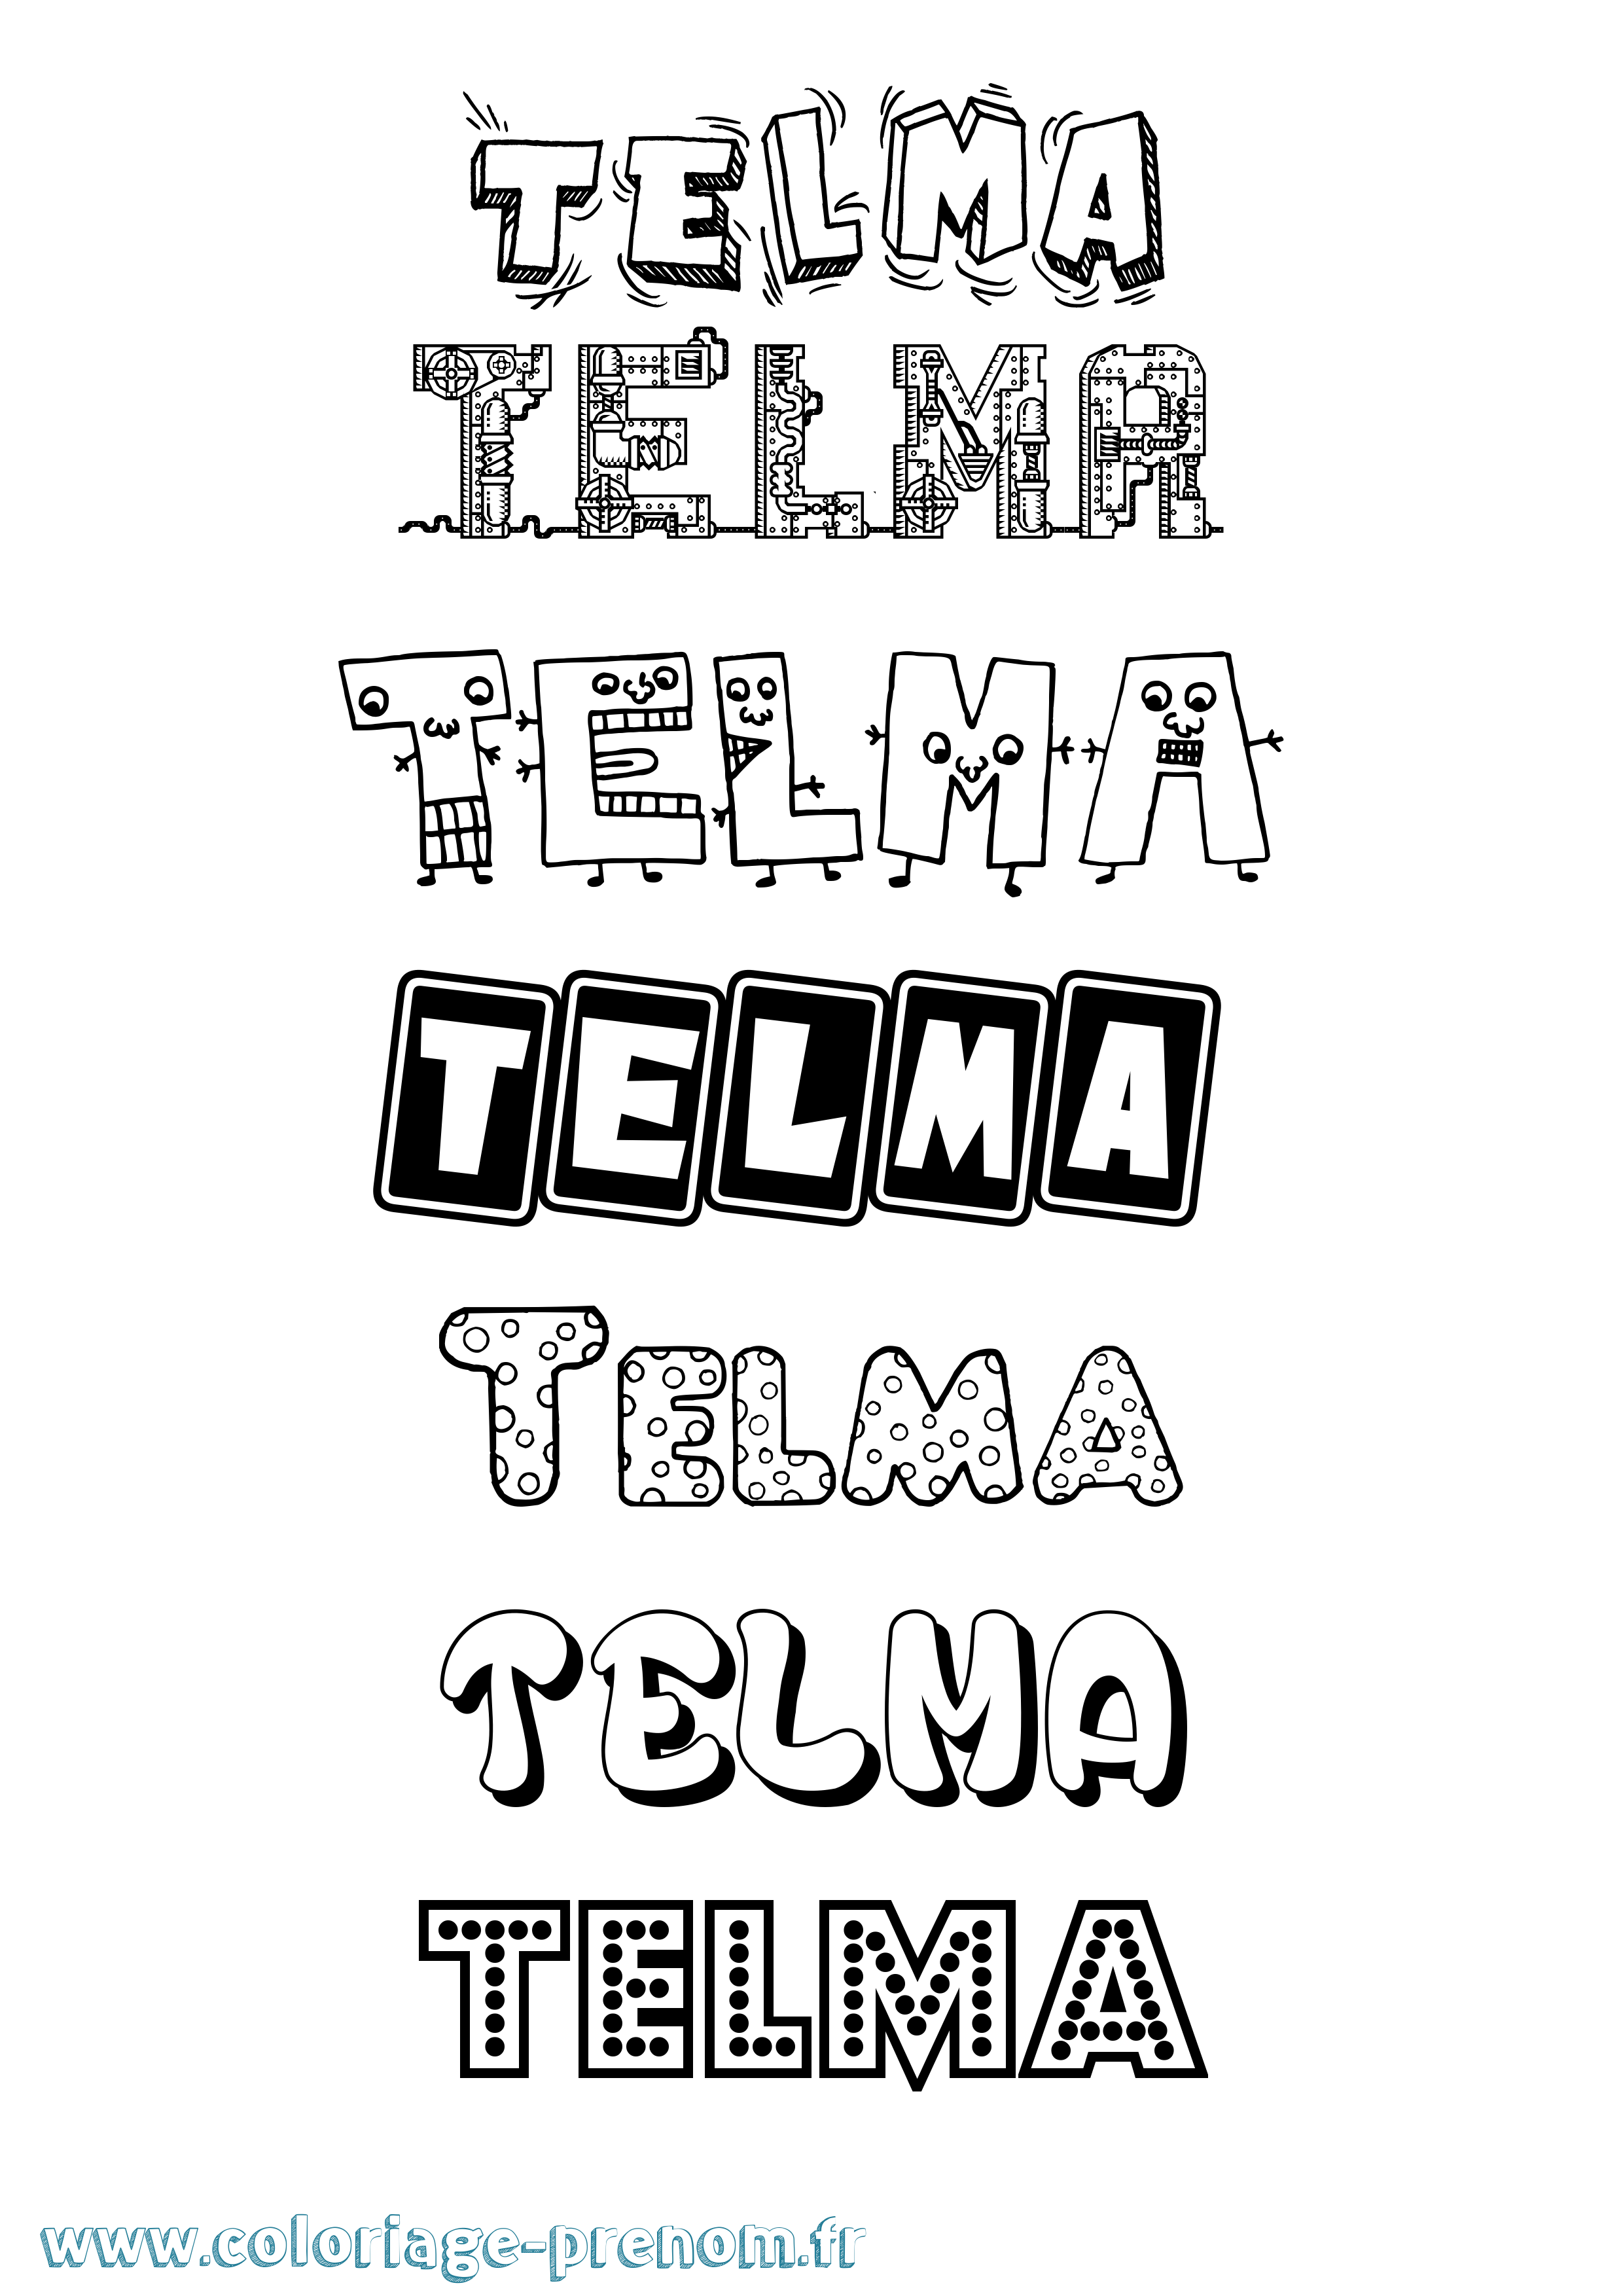 Coloriage prénom Telma Fun